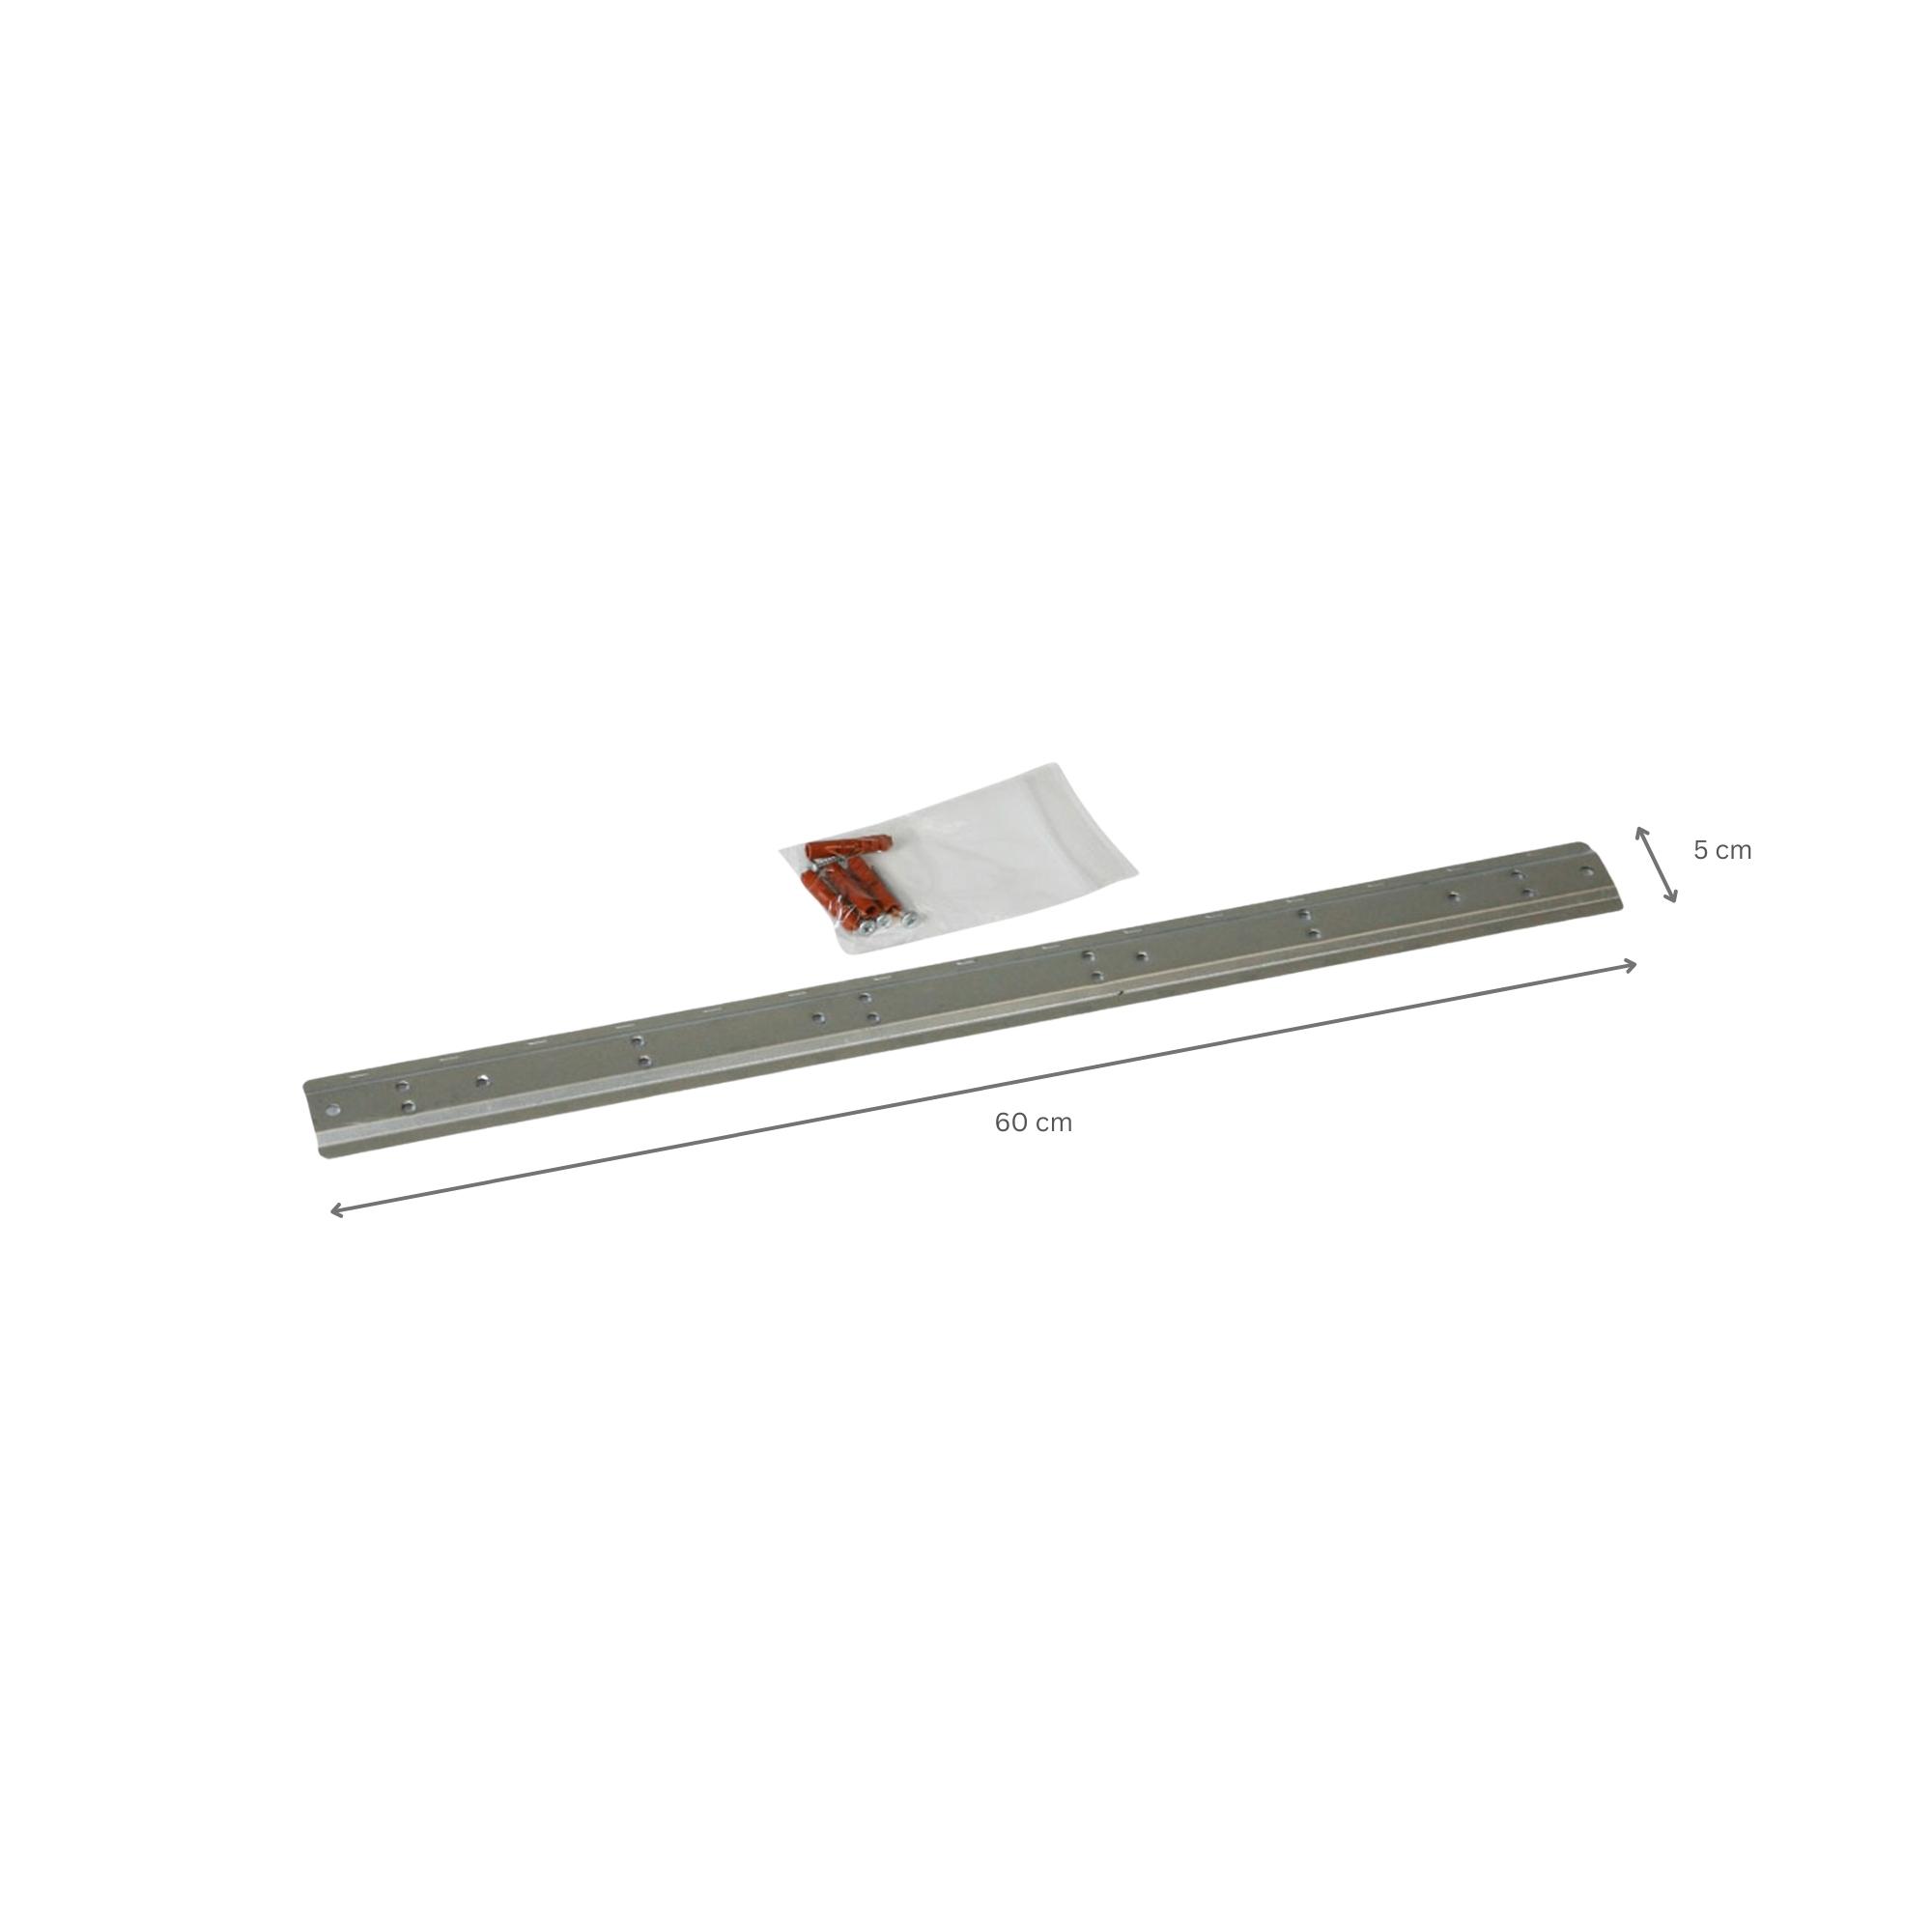 Wandleiste mit 6x Rote Sichtlagerbox 1.0 | HxBxT 6,1x60,5x10cm | Wandhalterung, Kleinteileaufbewahrung, Sortimentsboxhalterung